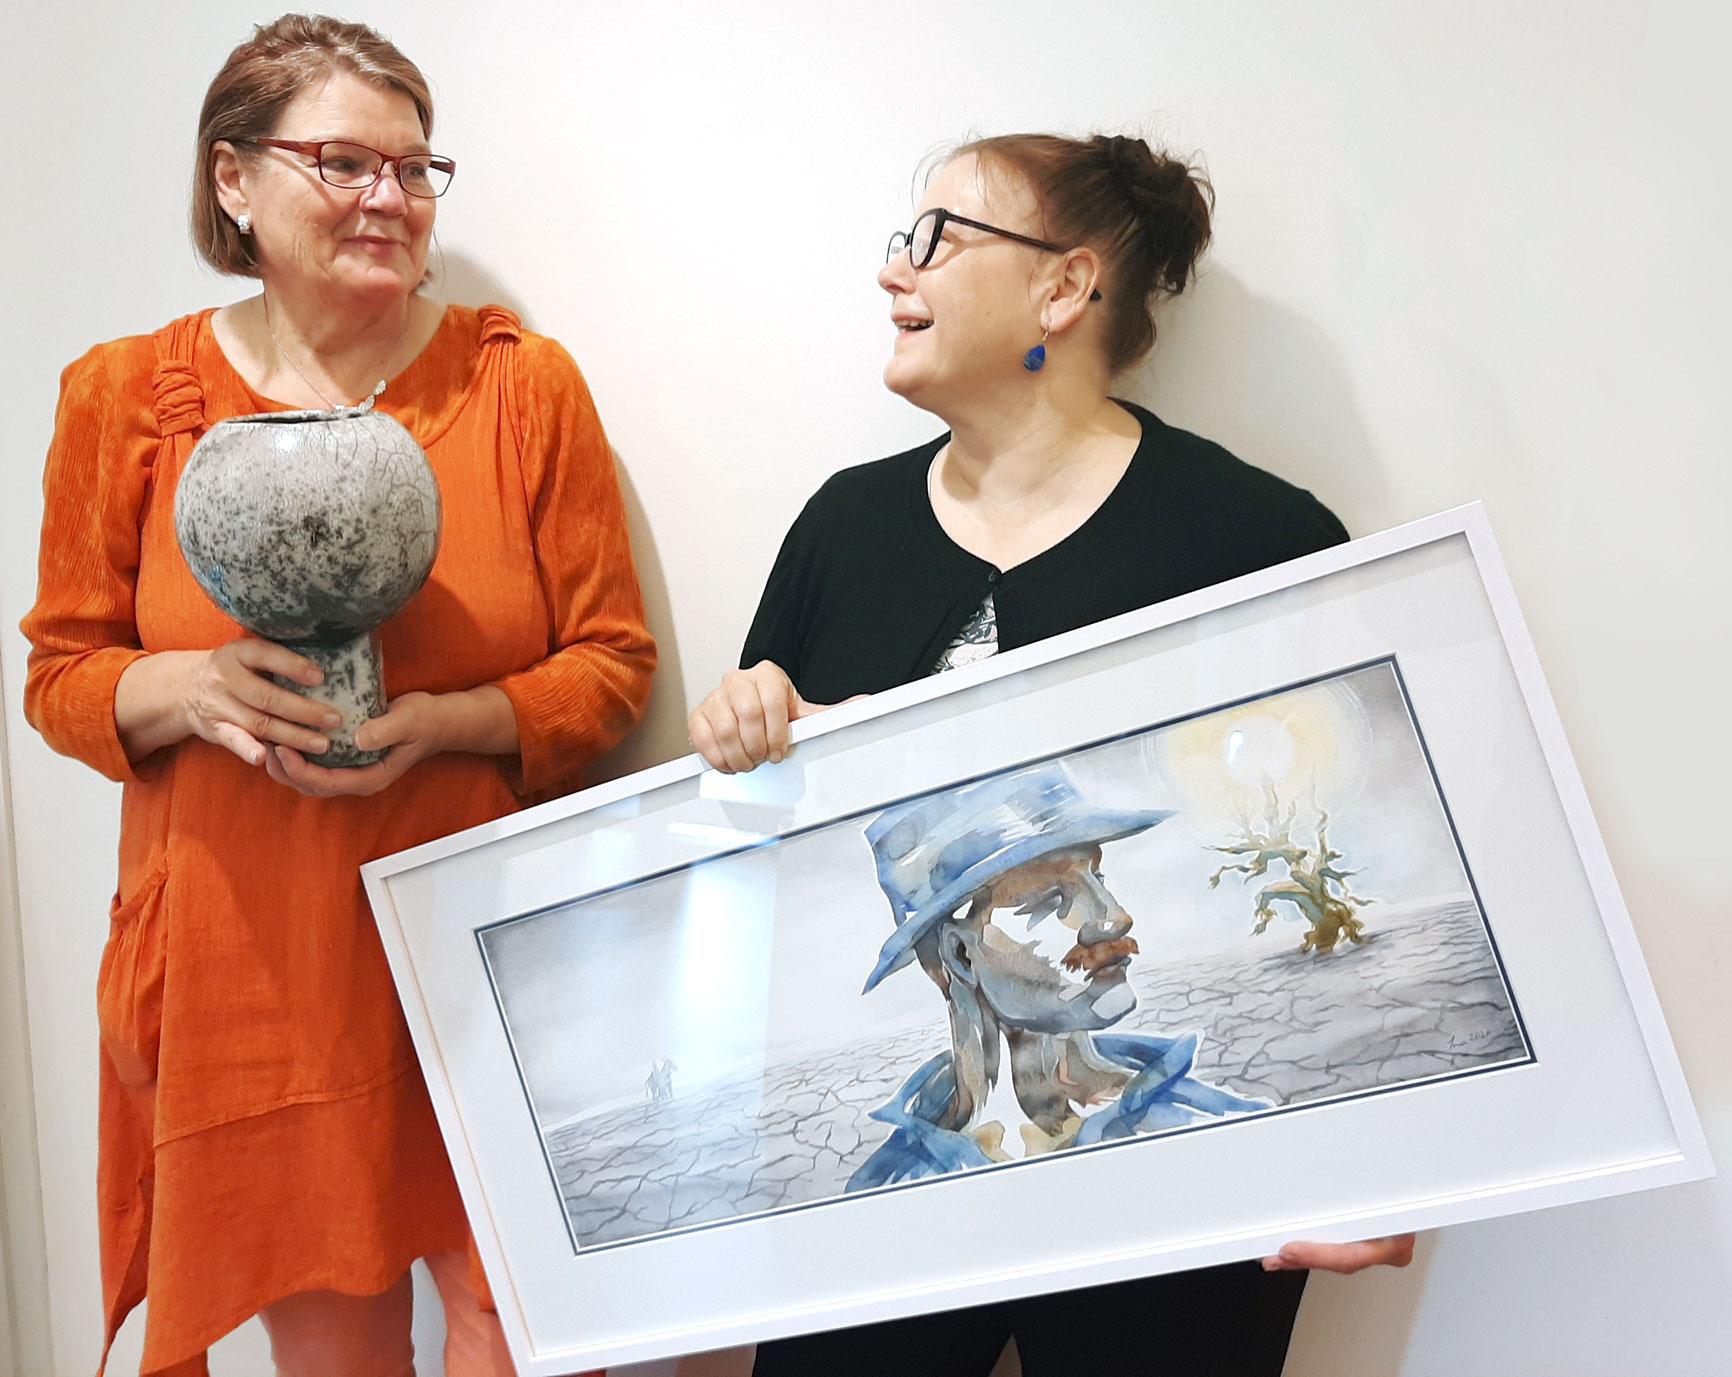 Liisa Turunen ja Ina Jaakkola sanovat olevansa sielunsiskoja. Turusella kädessään rakutekniikalla toteutettu Kehtolaulu-teos ja Ina Jaakkolalla Vääriä valintoja ja huonoja sattumia 1 -maalaus.